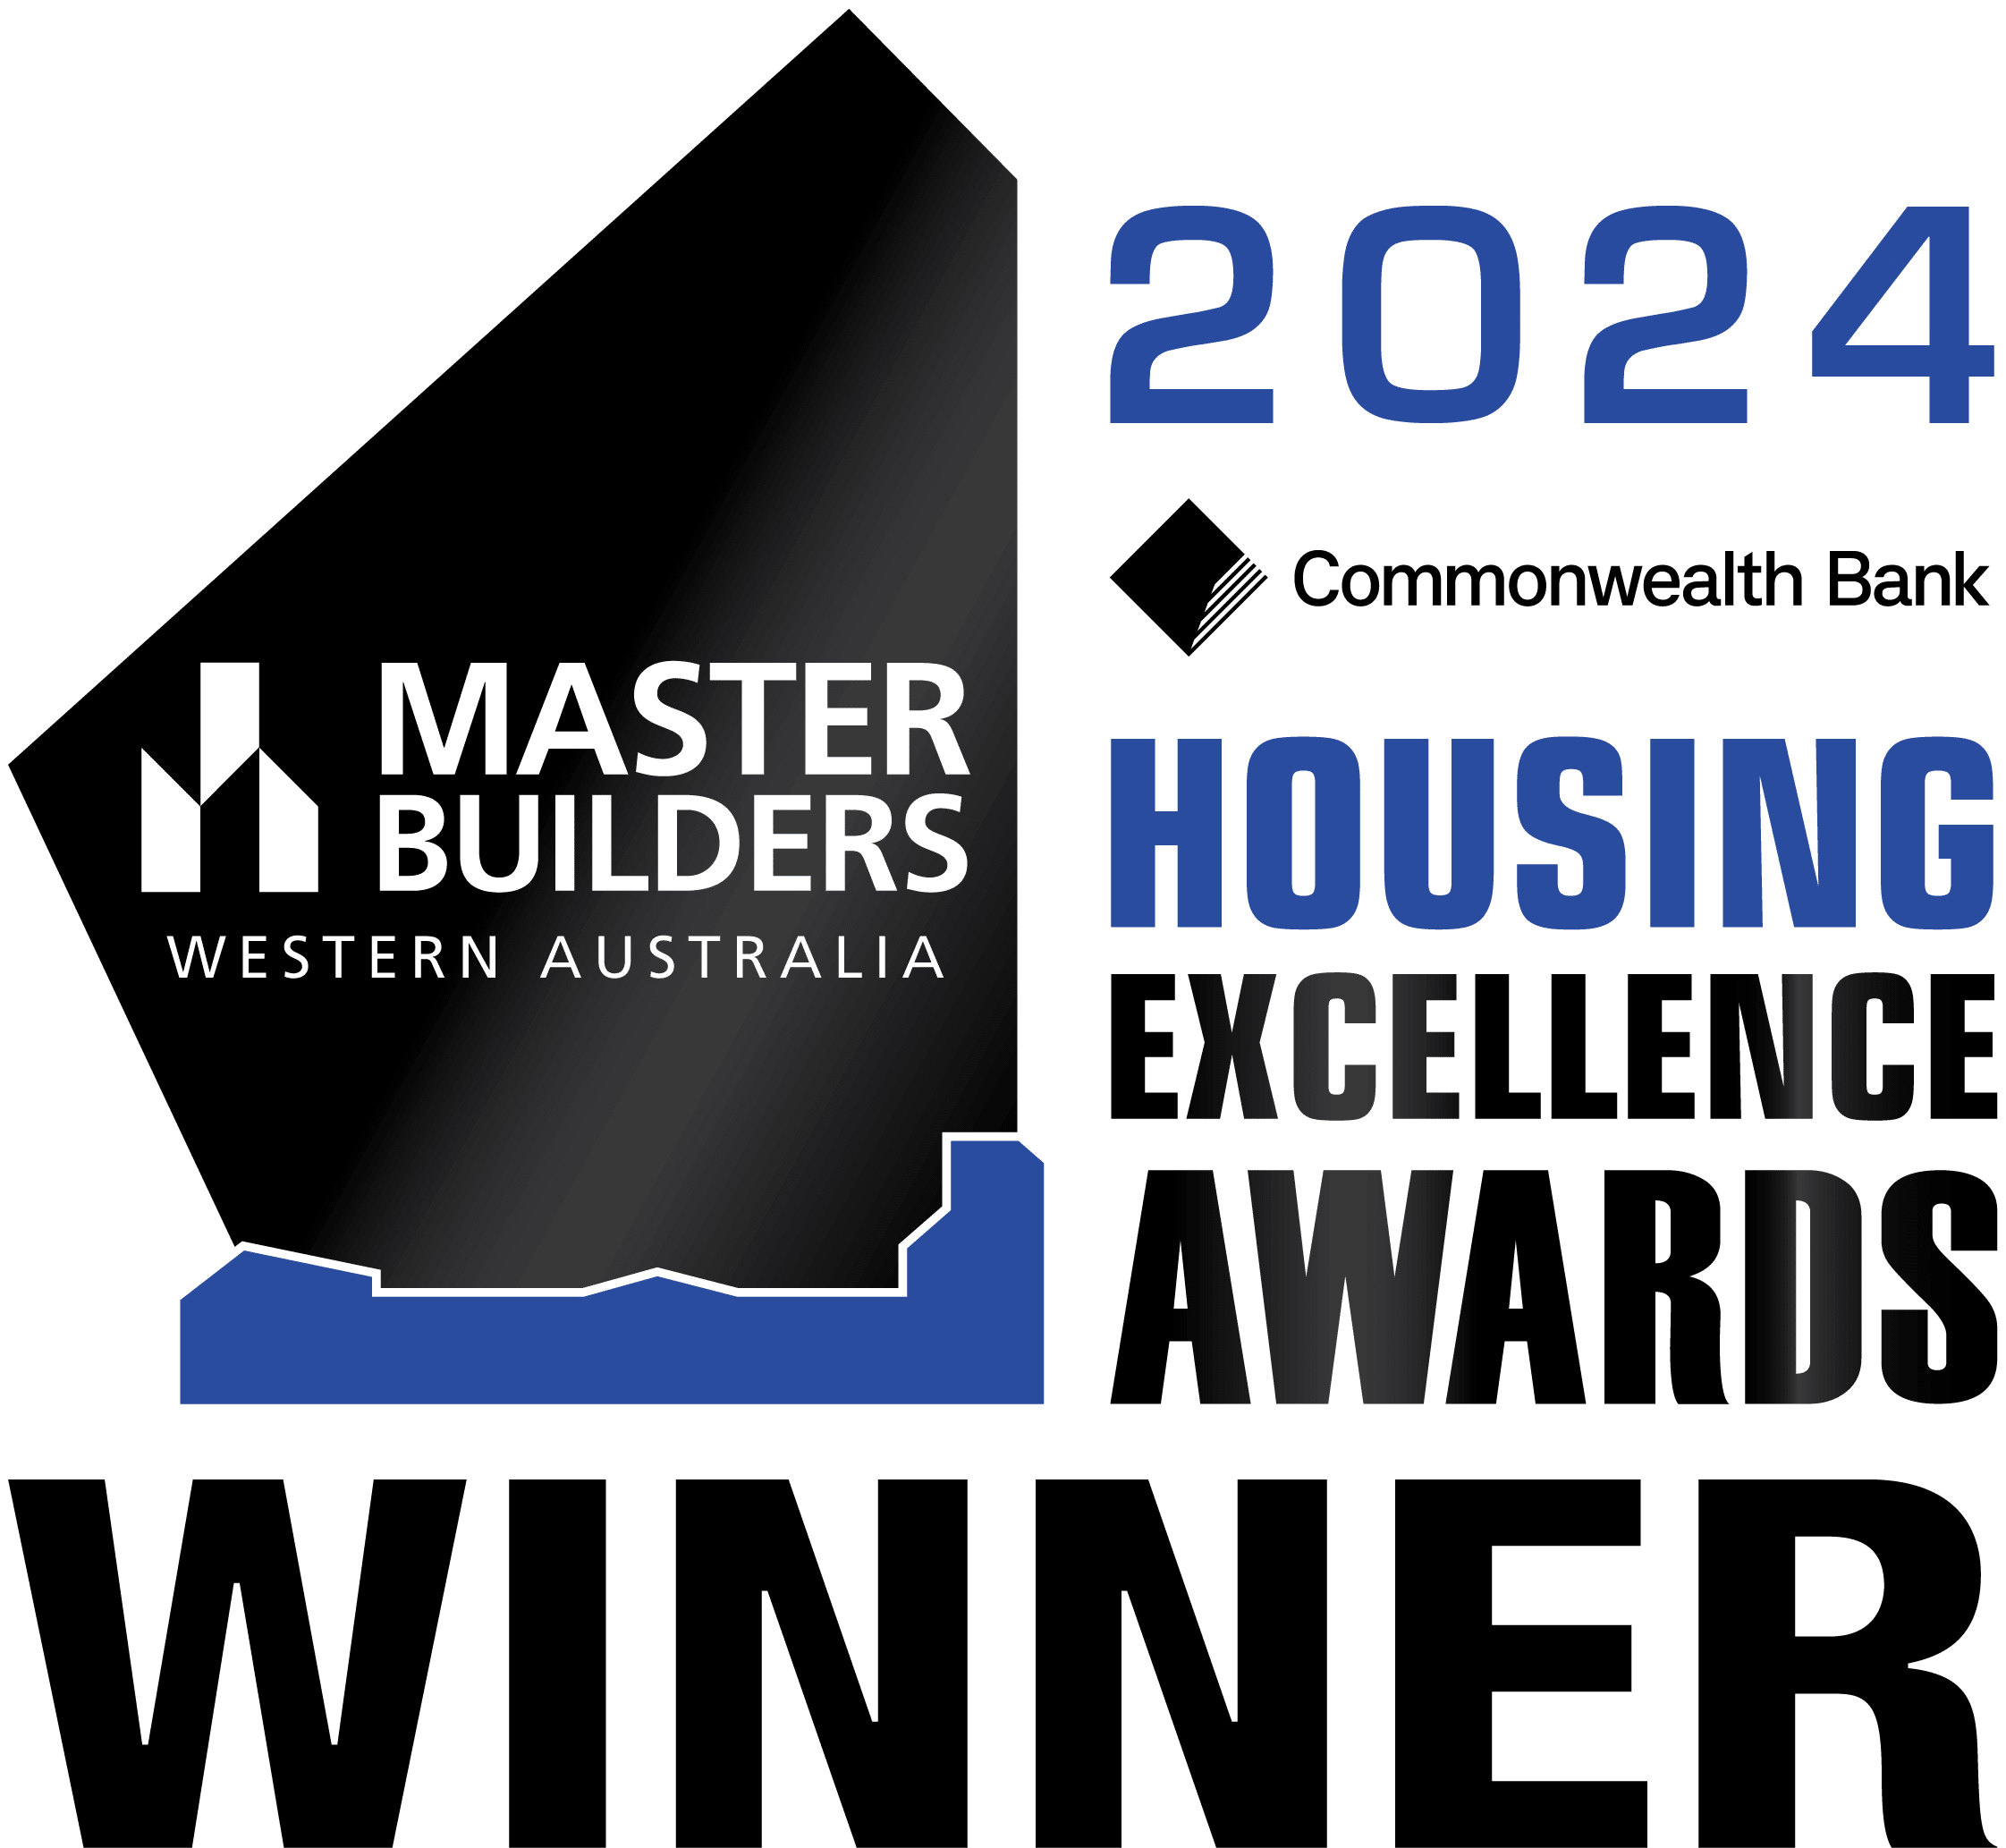 2015 housing excellence awards winner